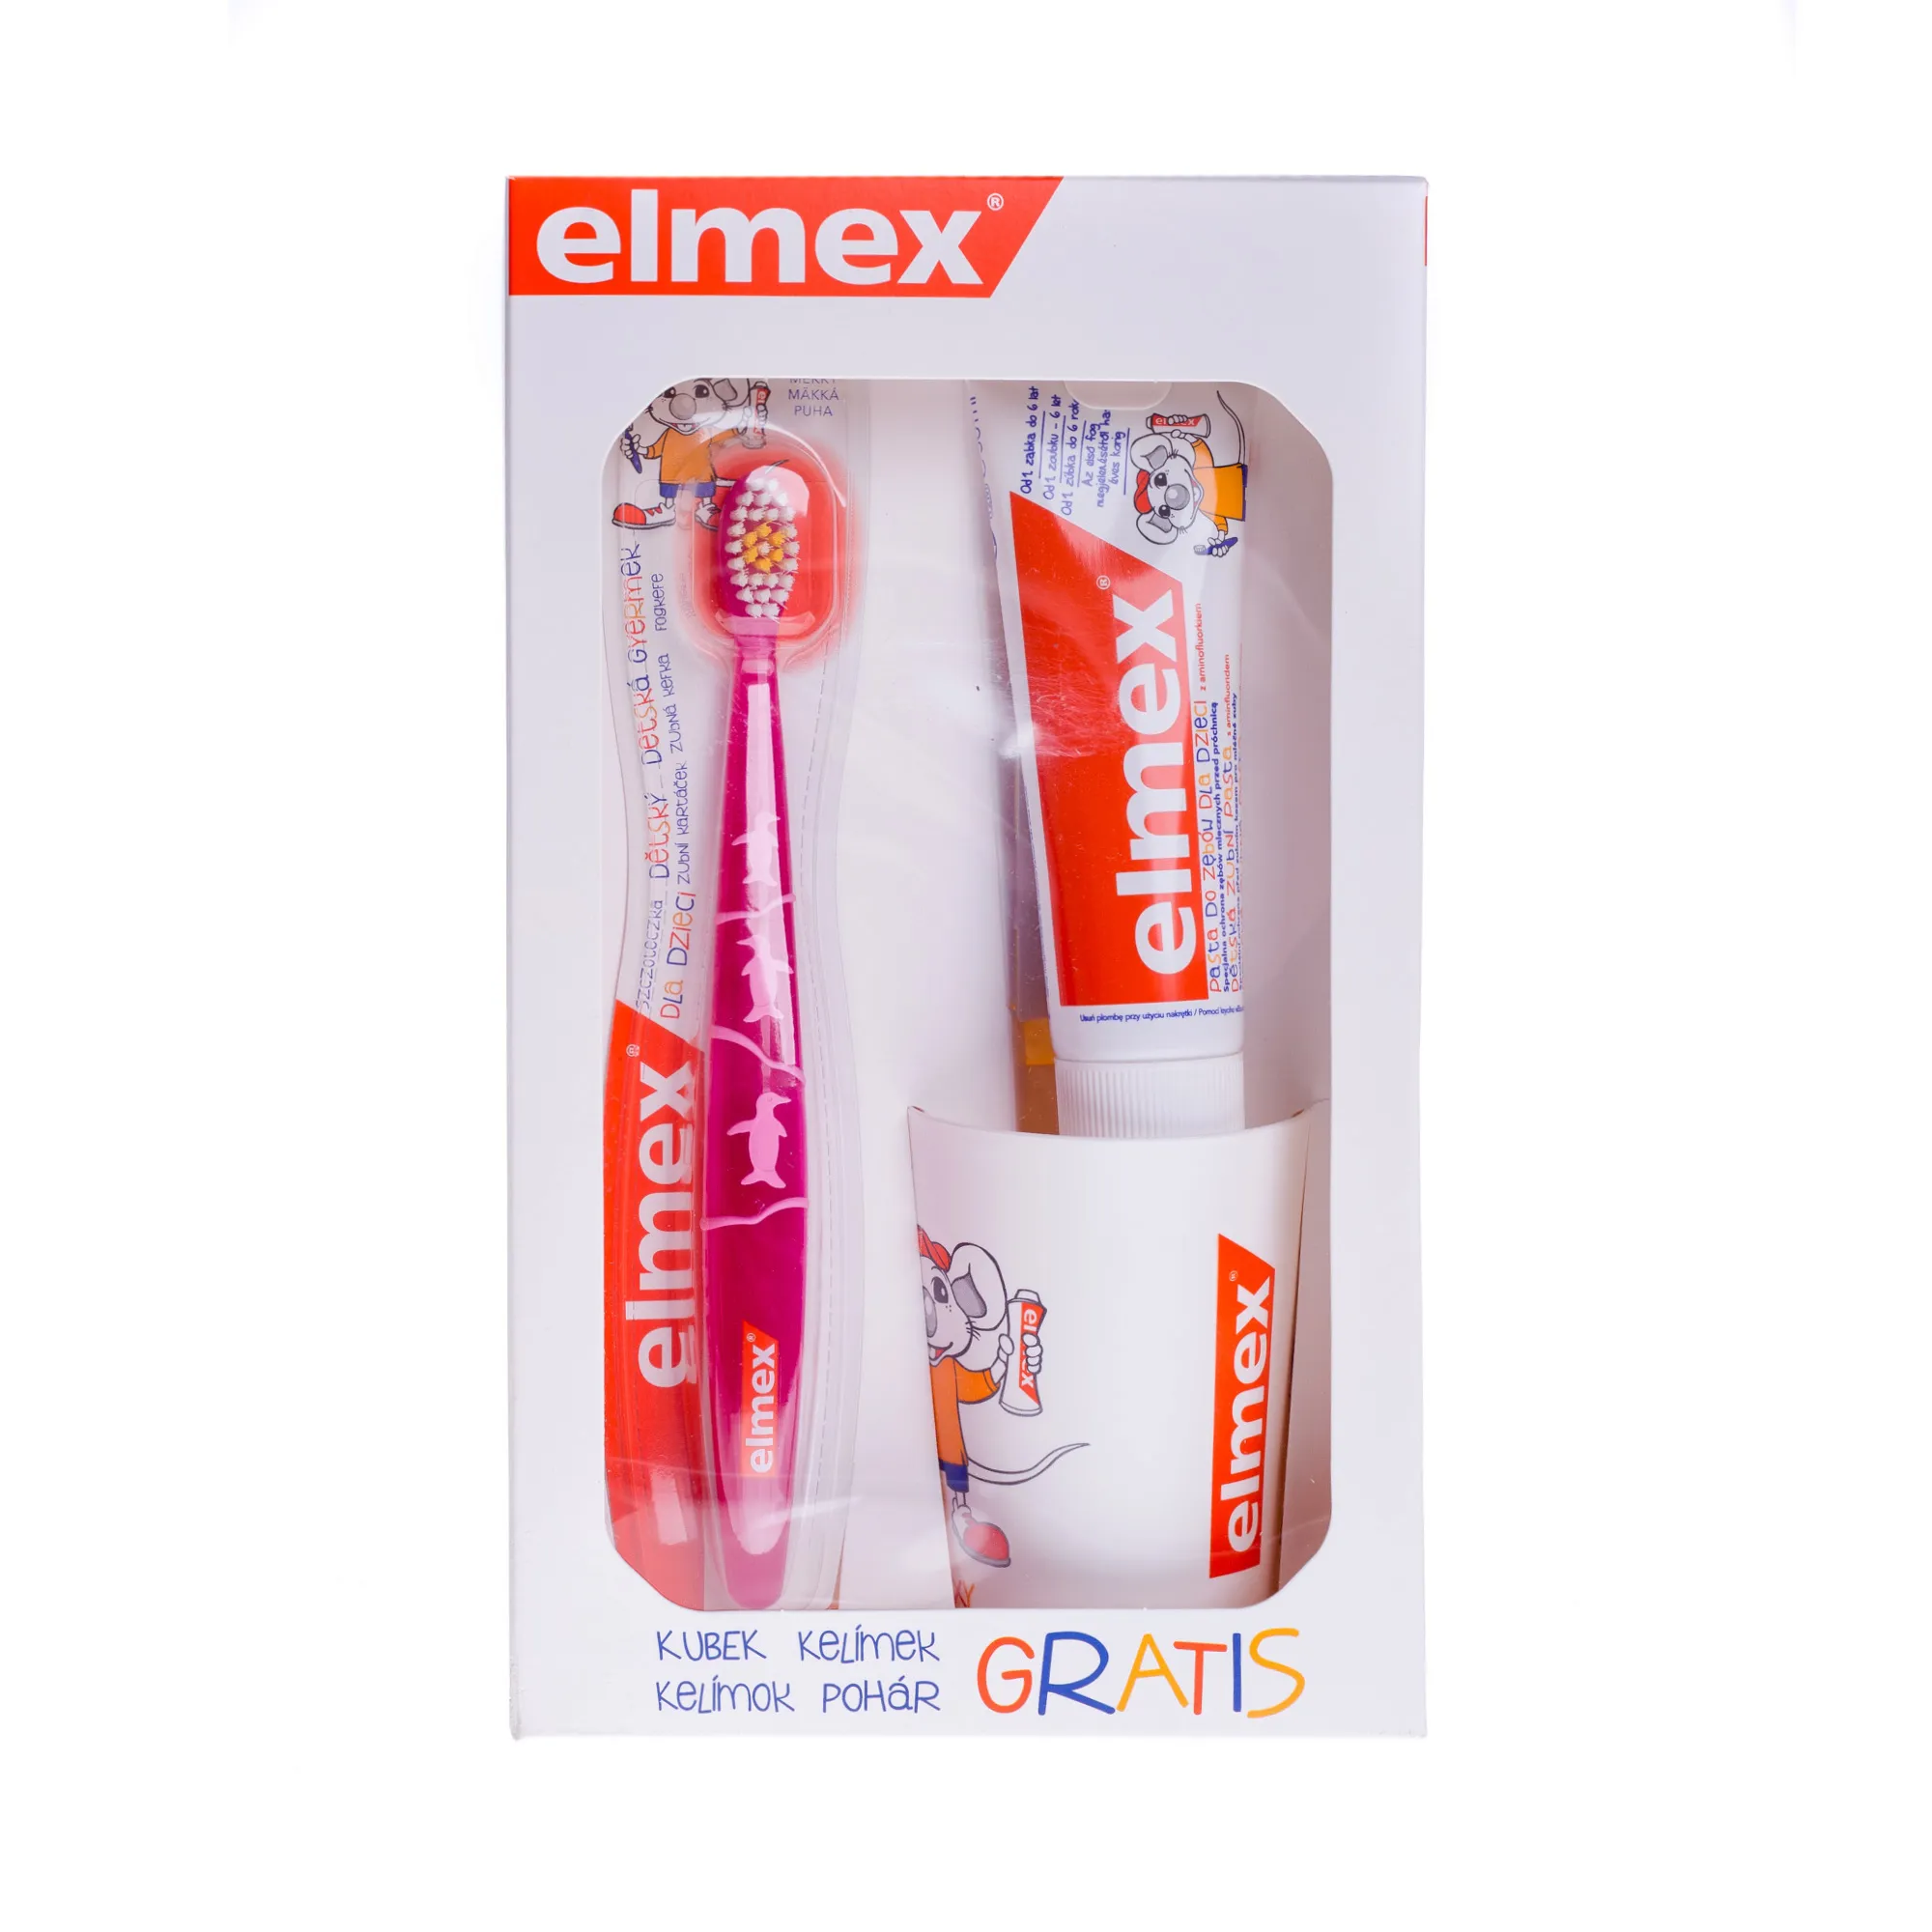 Elmex zestaw dla dzieci, zestaw 50 ml pasty + szczoteczka+kubek